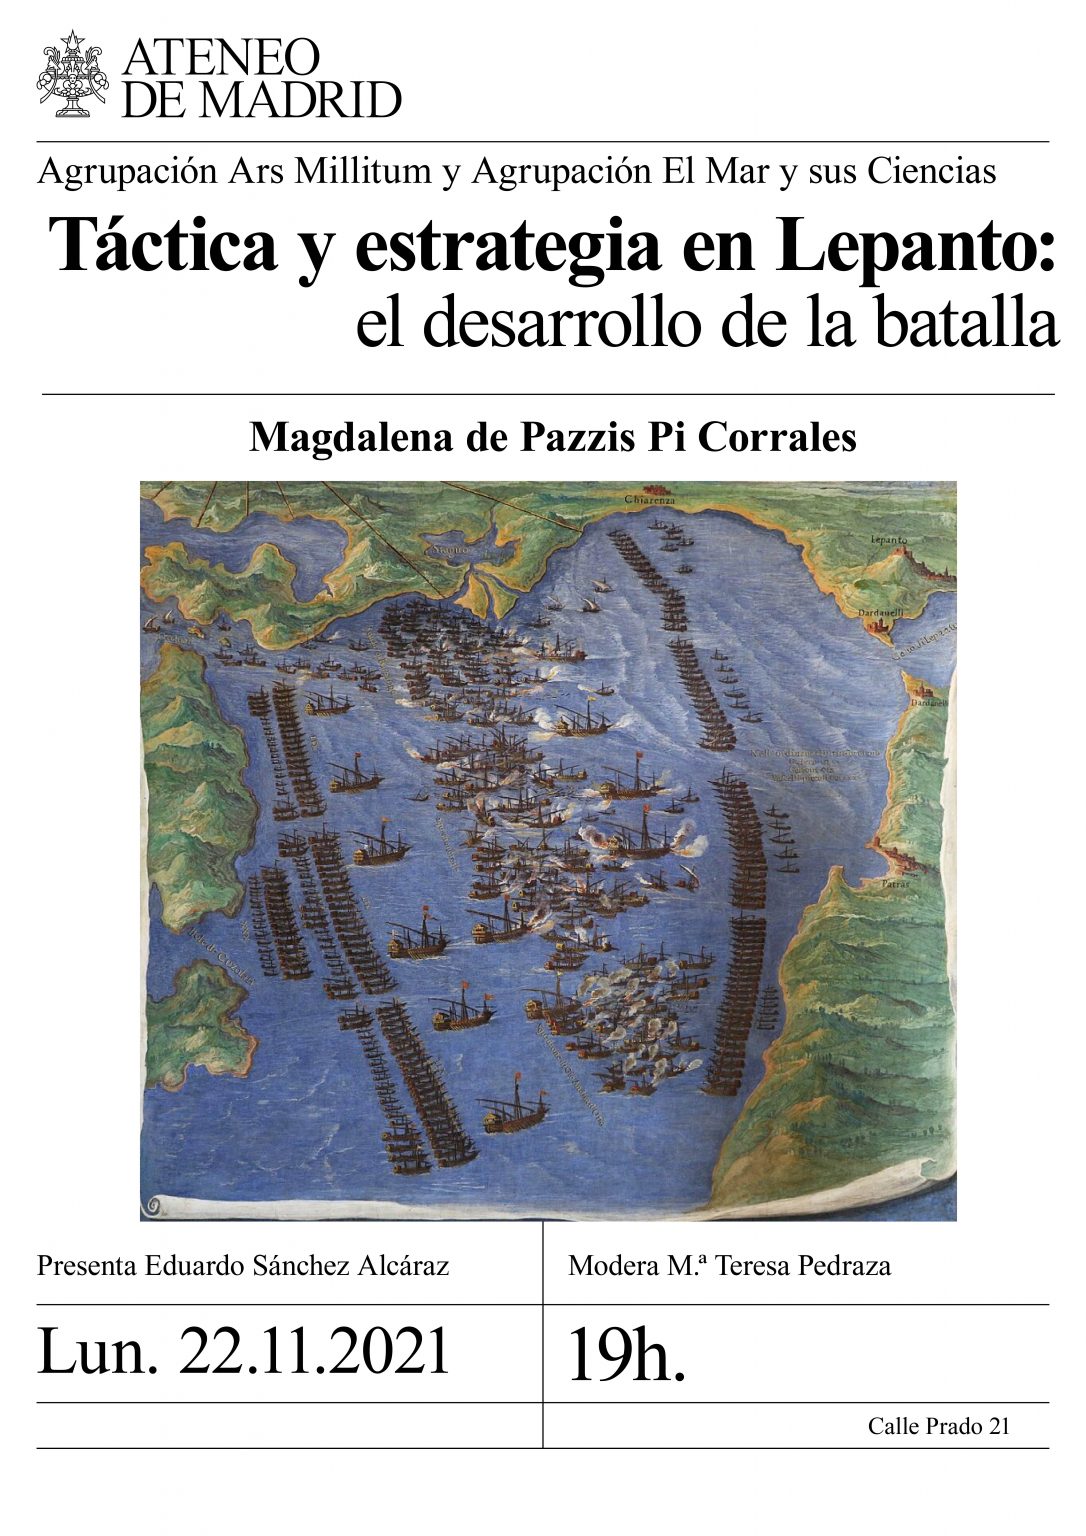 Conferencia Táctica y estrategia en Lepanto: el desarrollo de la batalla. Ponente Magdalena de Pazzis Pi Corrales.